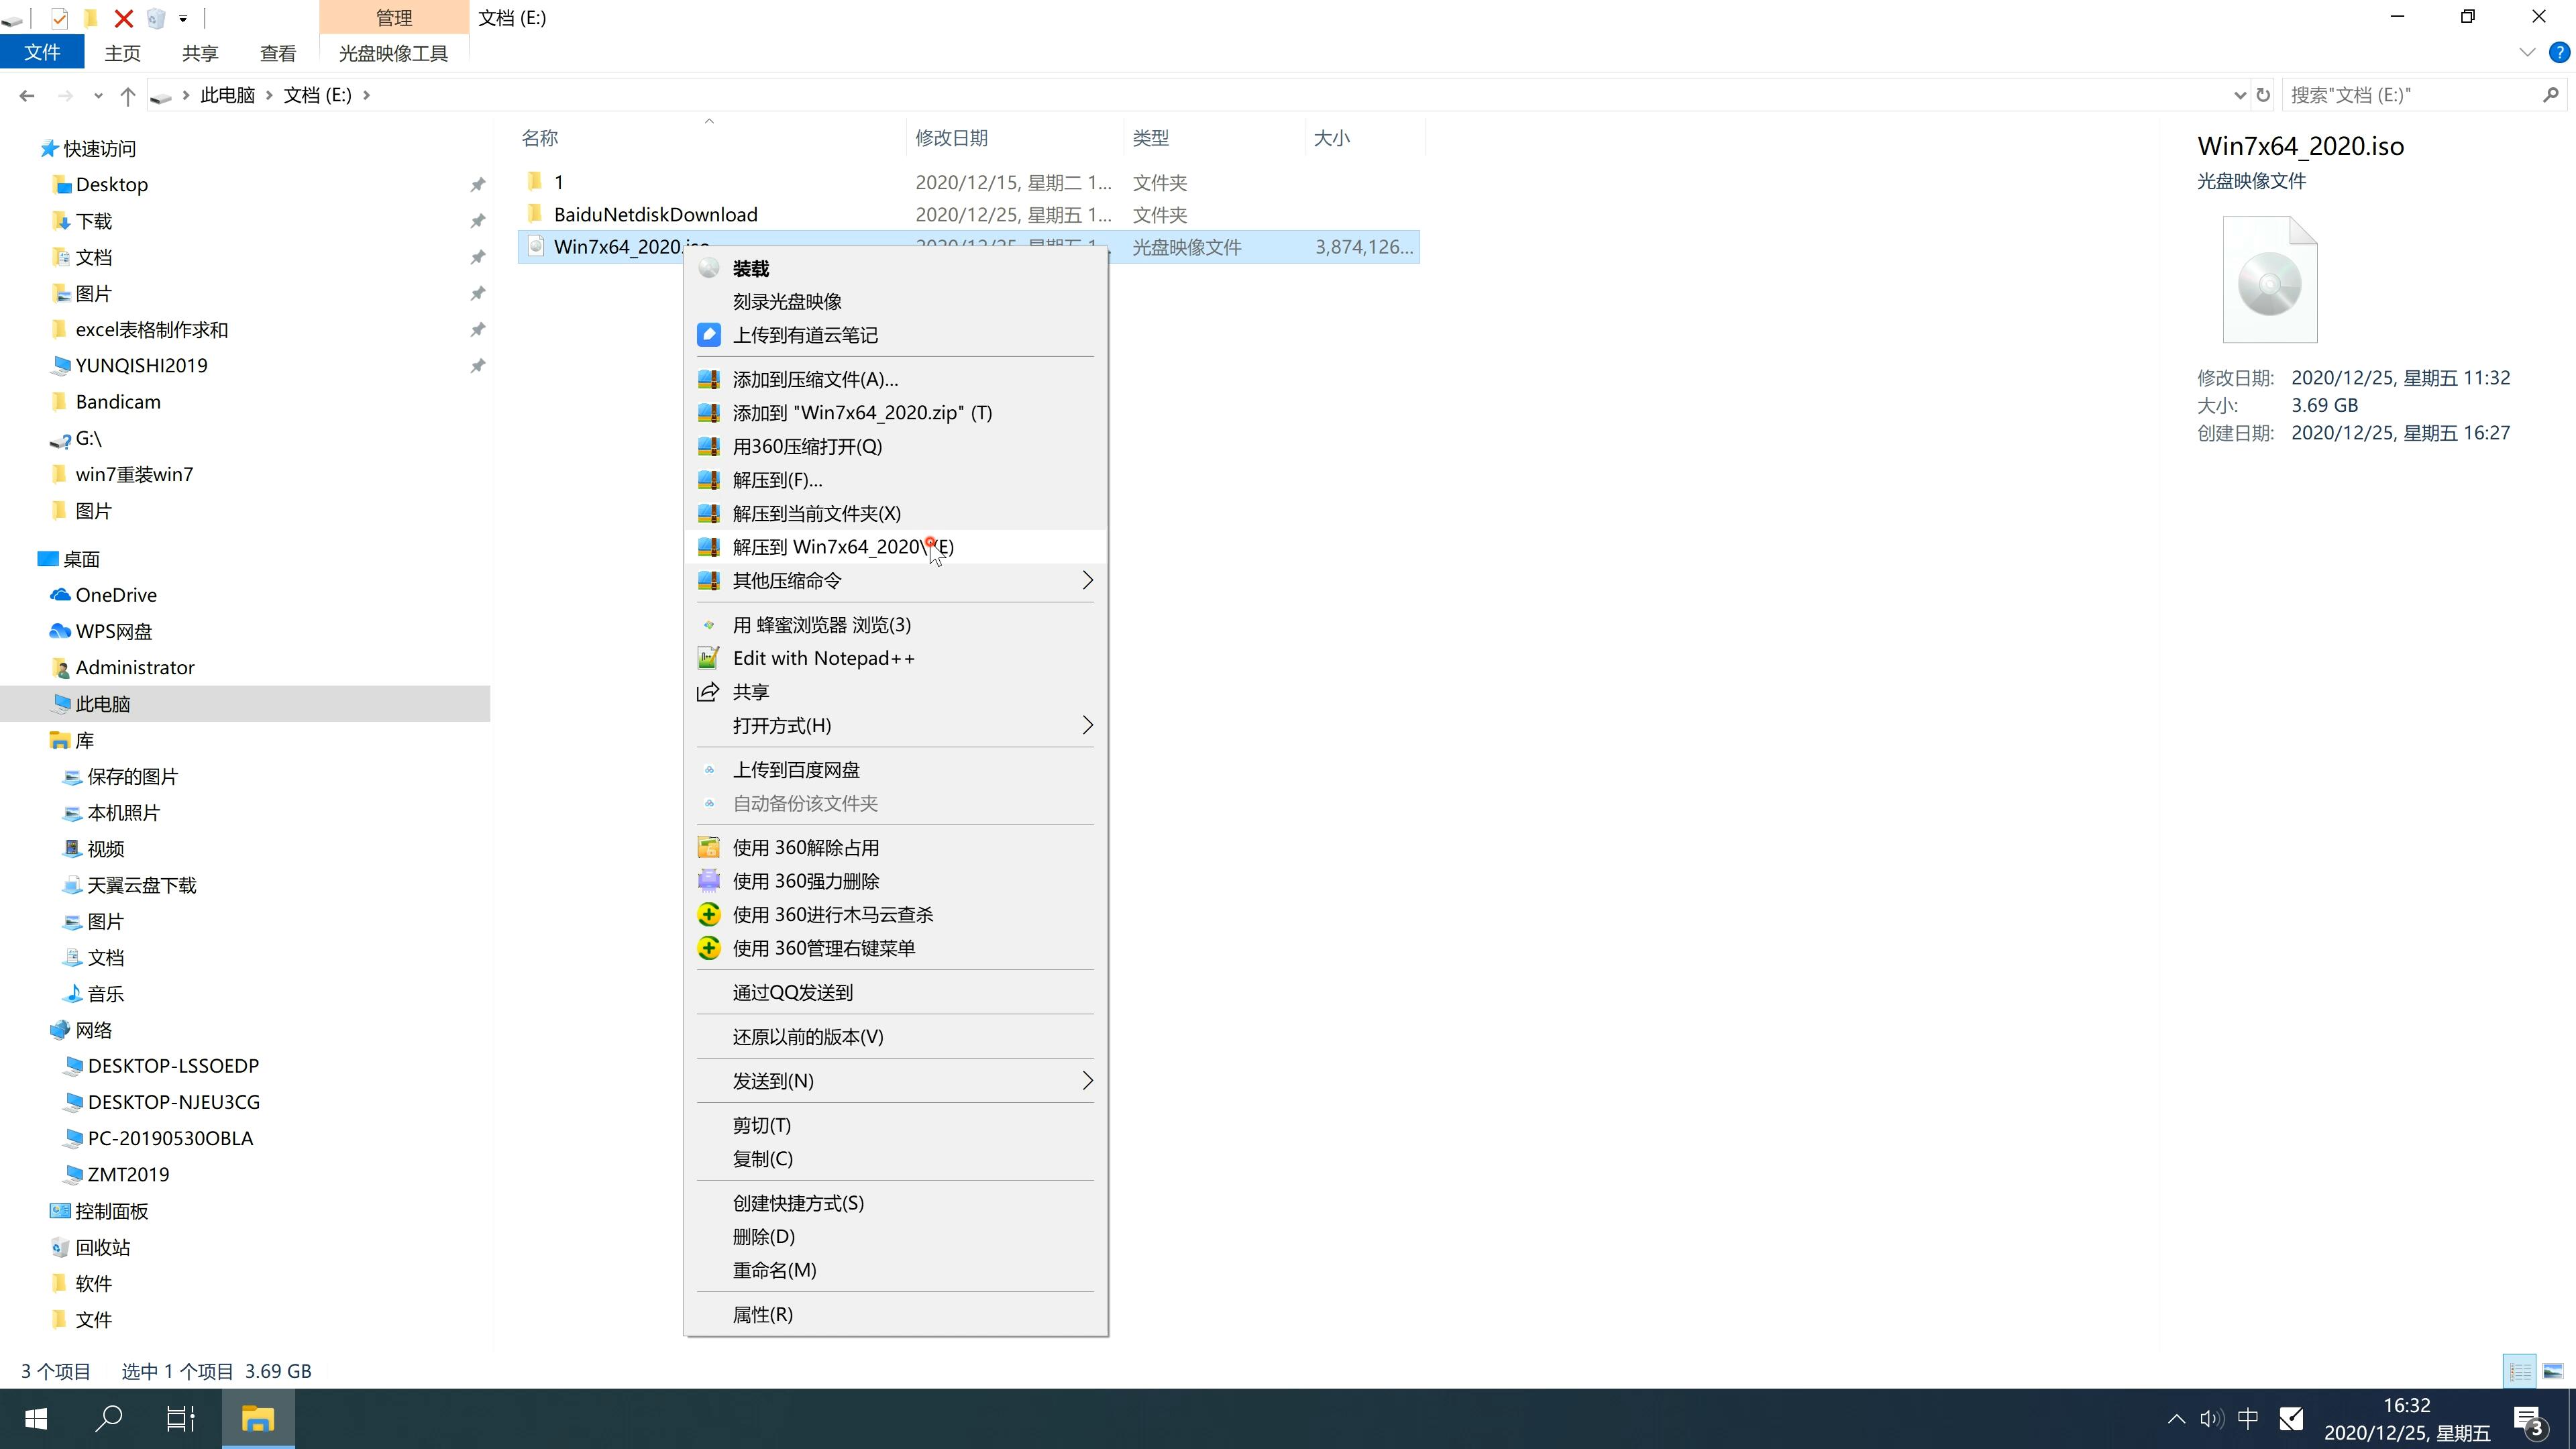 新中关村系统 GHOST windows10 X64位 SP1 纯净版系统镜像文件下载 V2021.01(1)